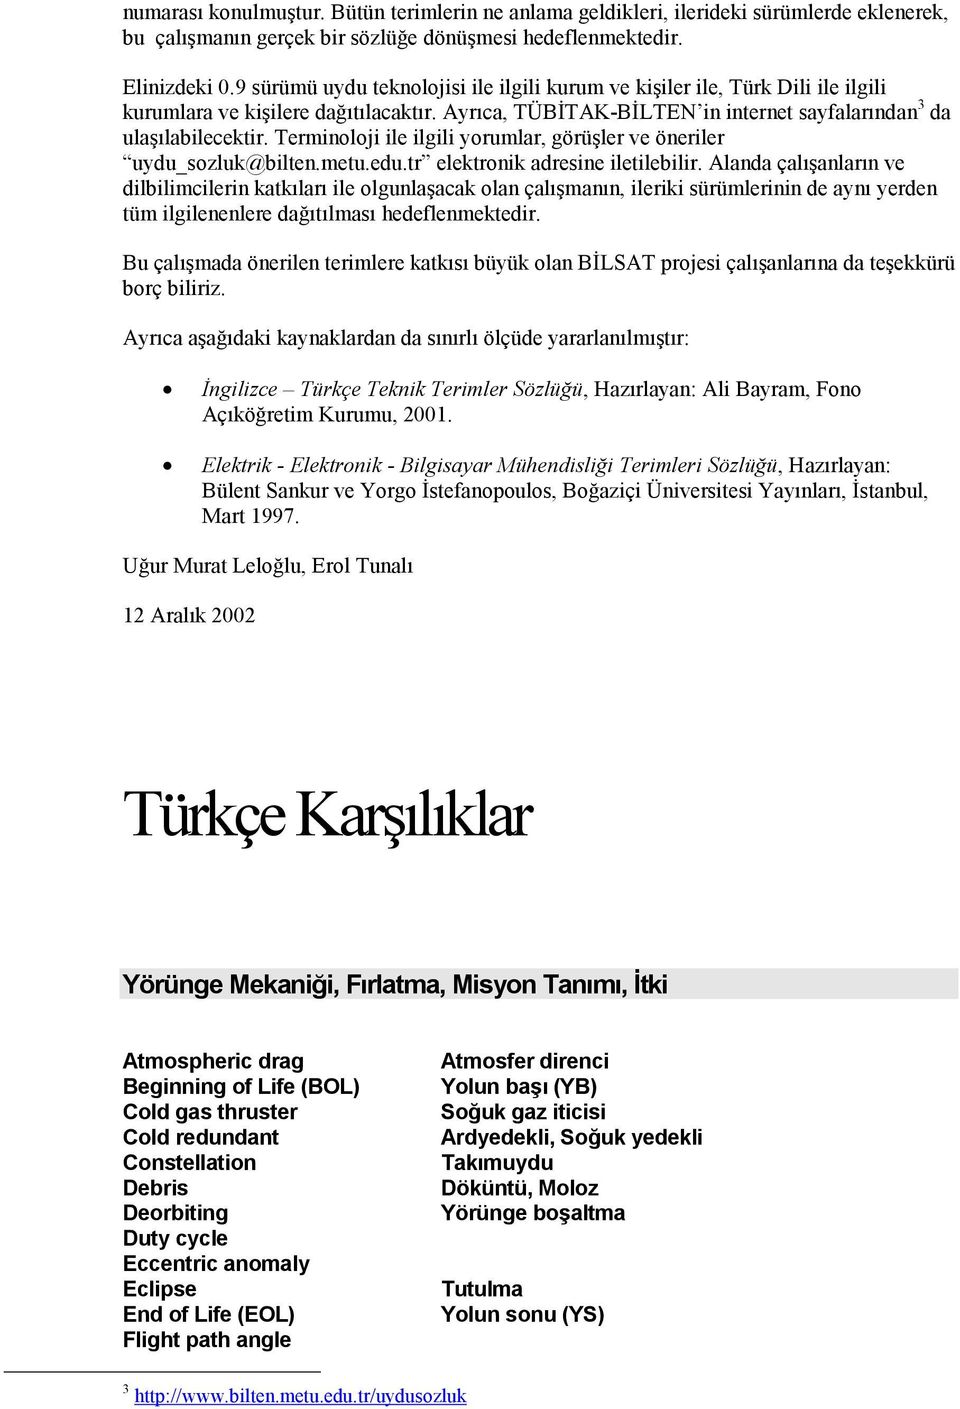 Terminoloji ile ilgili yorumlar, görüşler ve öneriler uydu_sozluk@bilten.metu.edu.tr elektronik adresine iletilebilir.